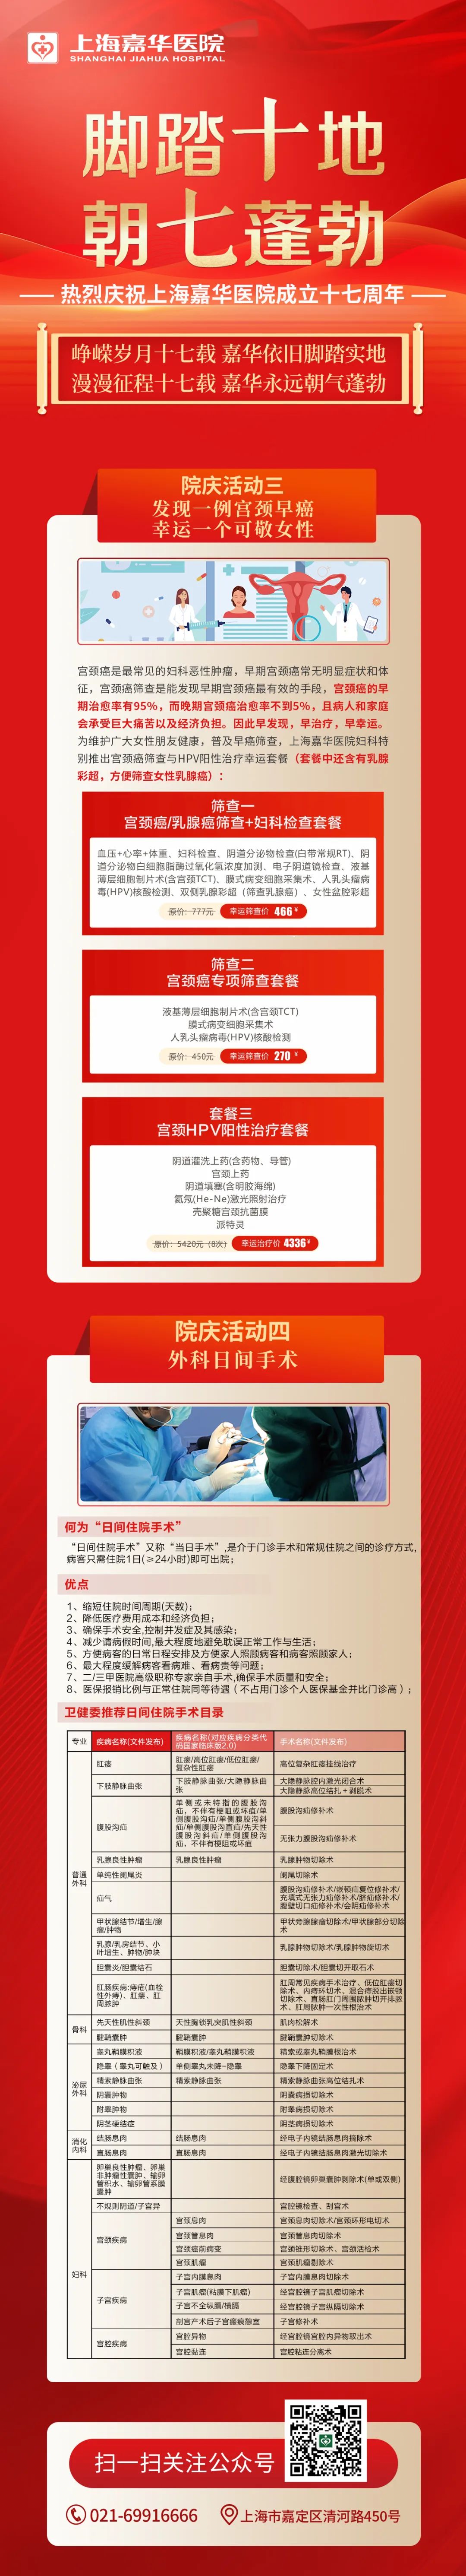 上海嘉华医院十七周年院庆活动第二弹（妇科宫颈筛查、外科日间手术）